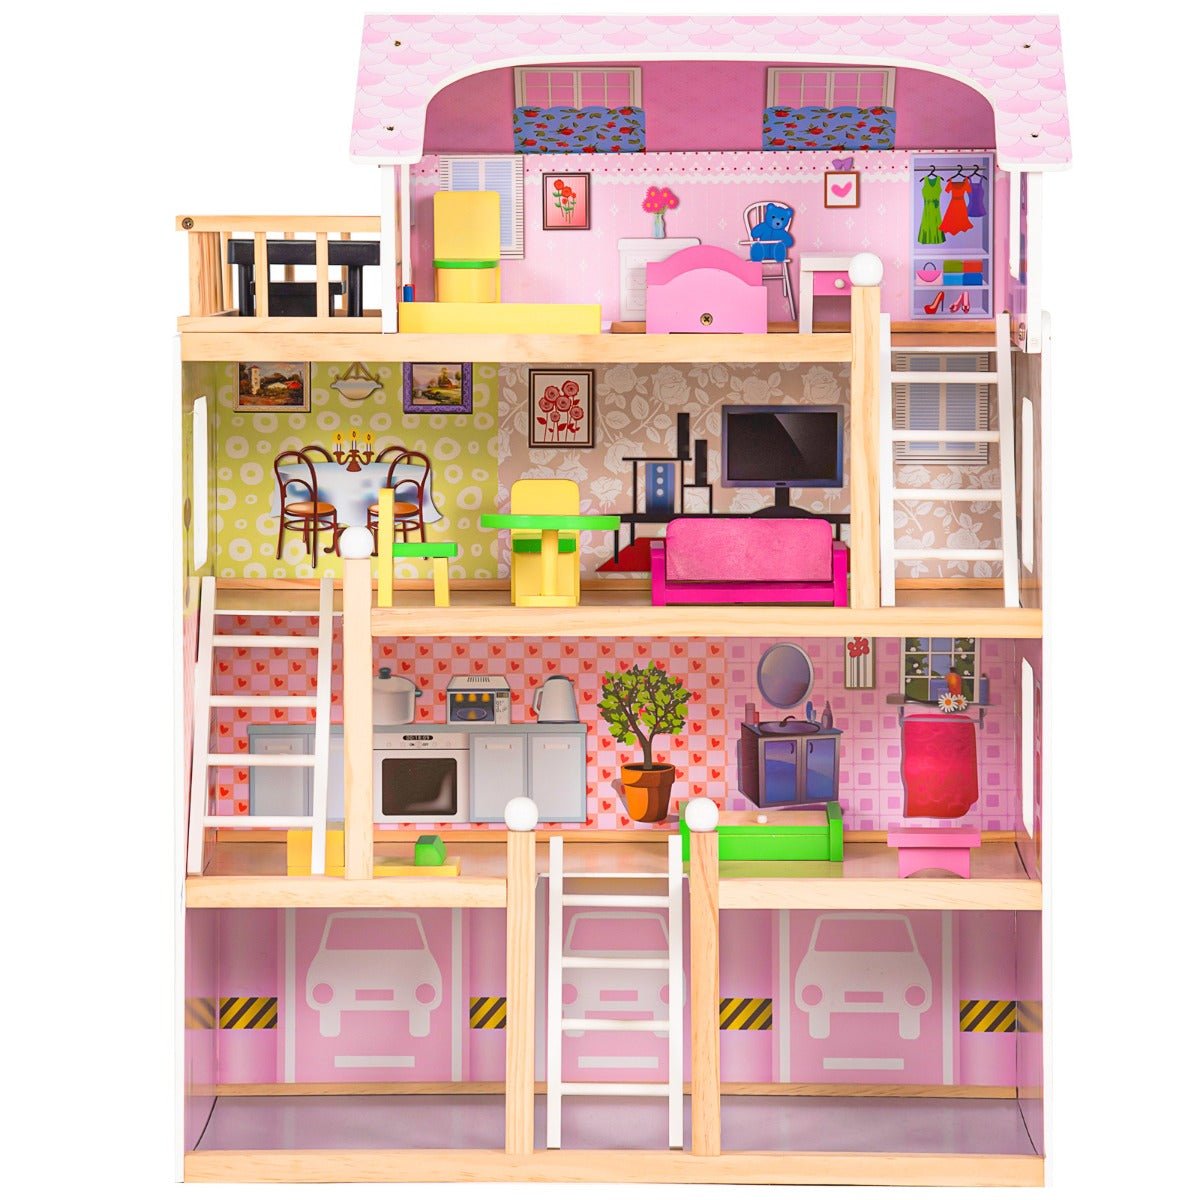 Enchanting 4-Storey Doll House: Where Imagination Flourishes